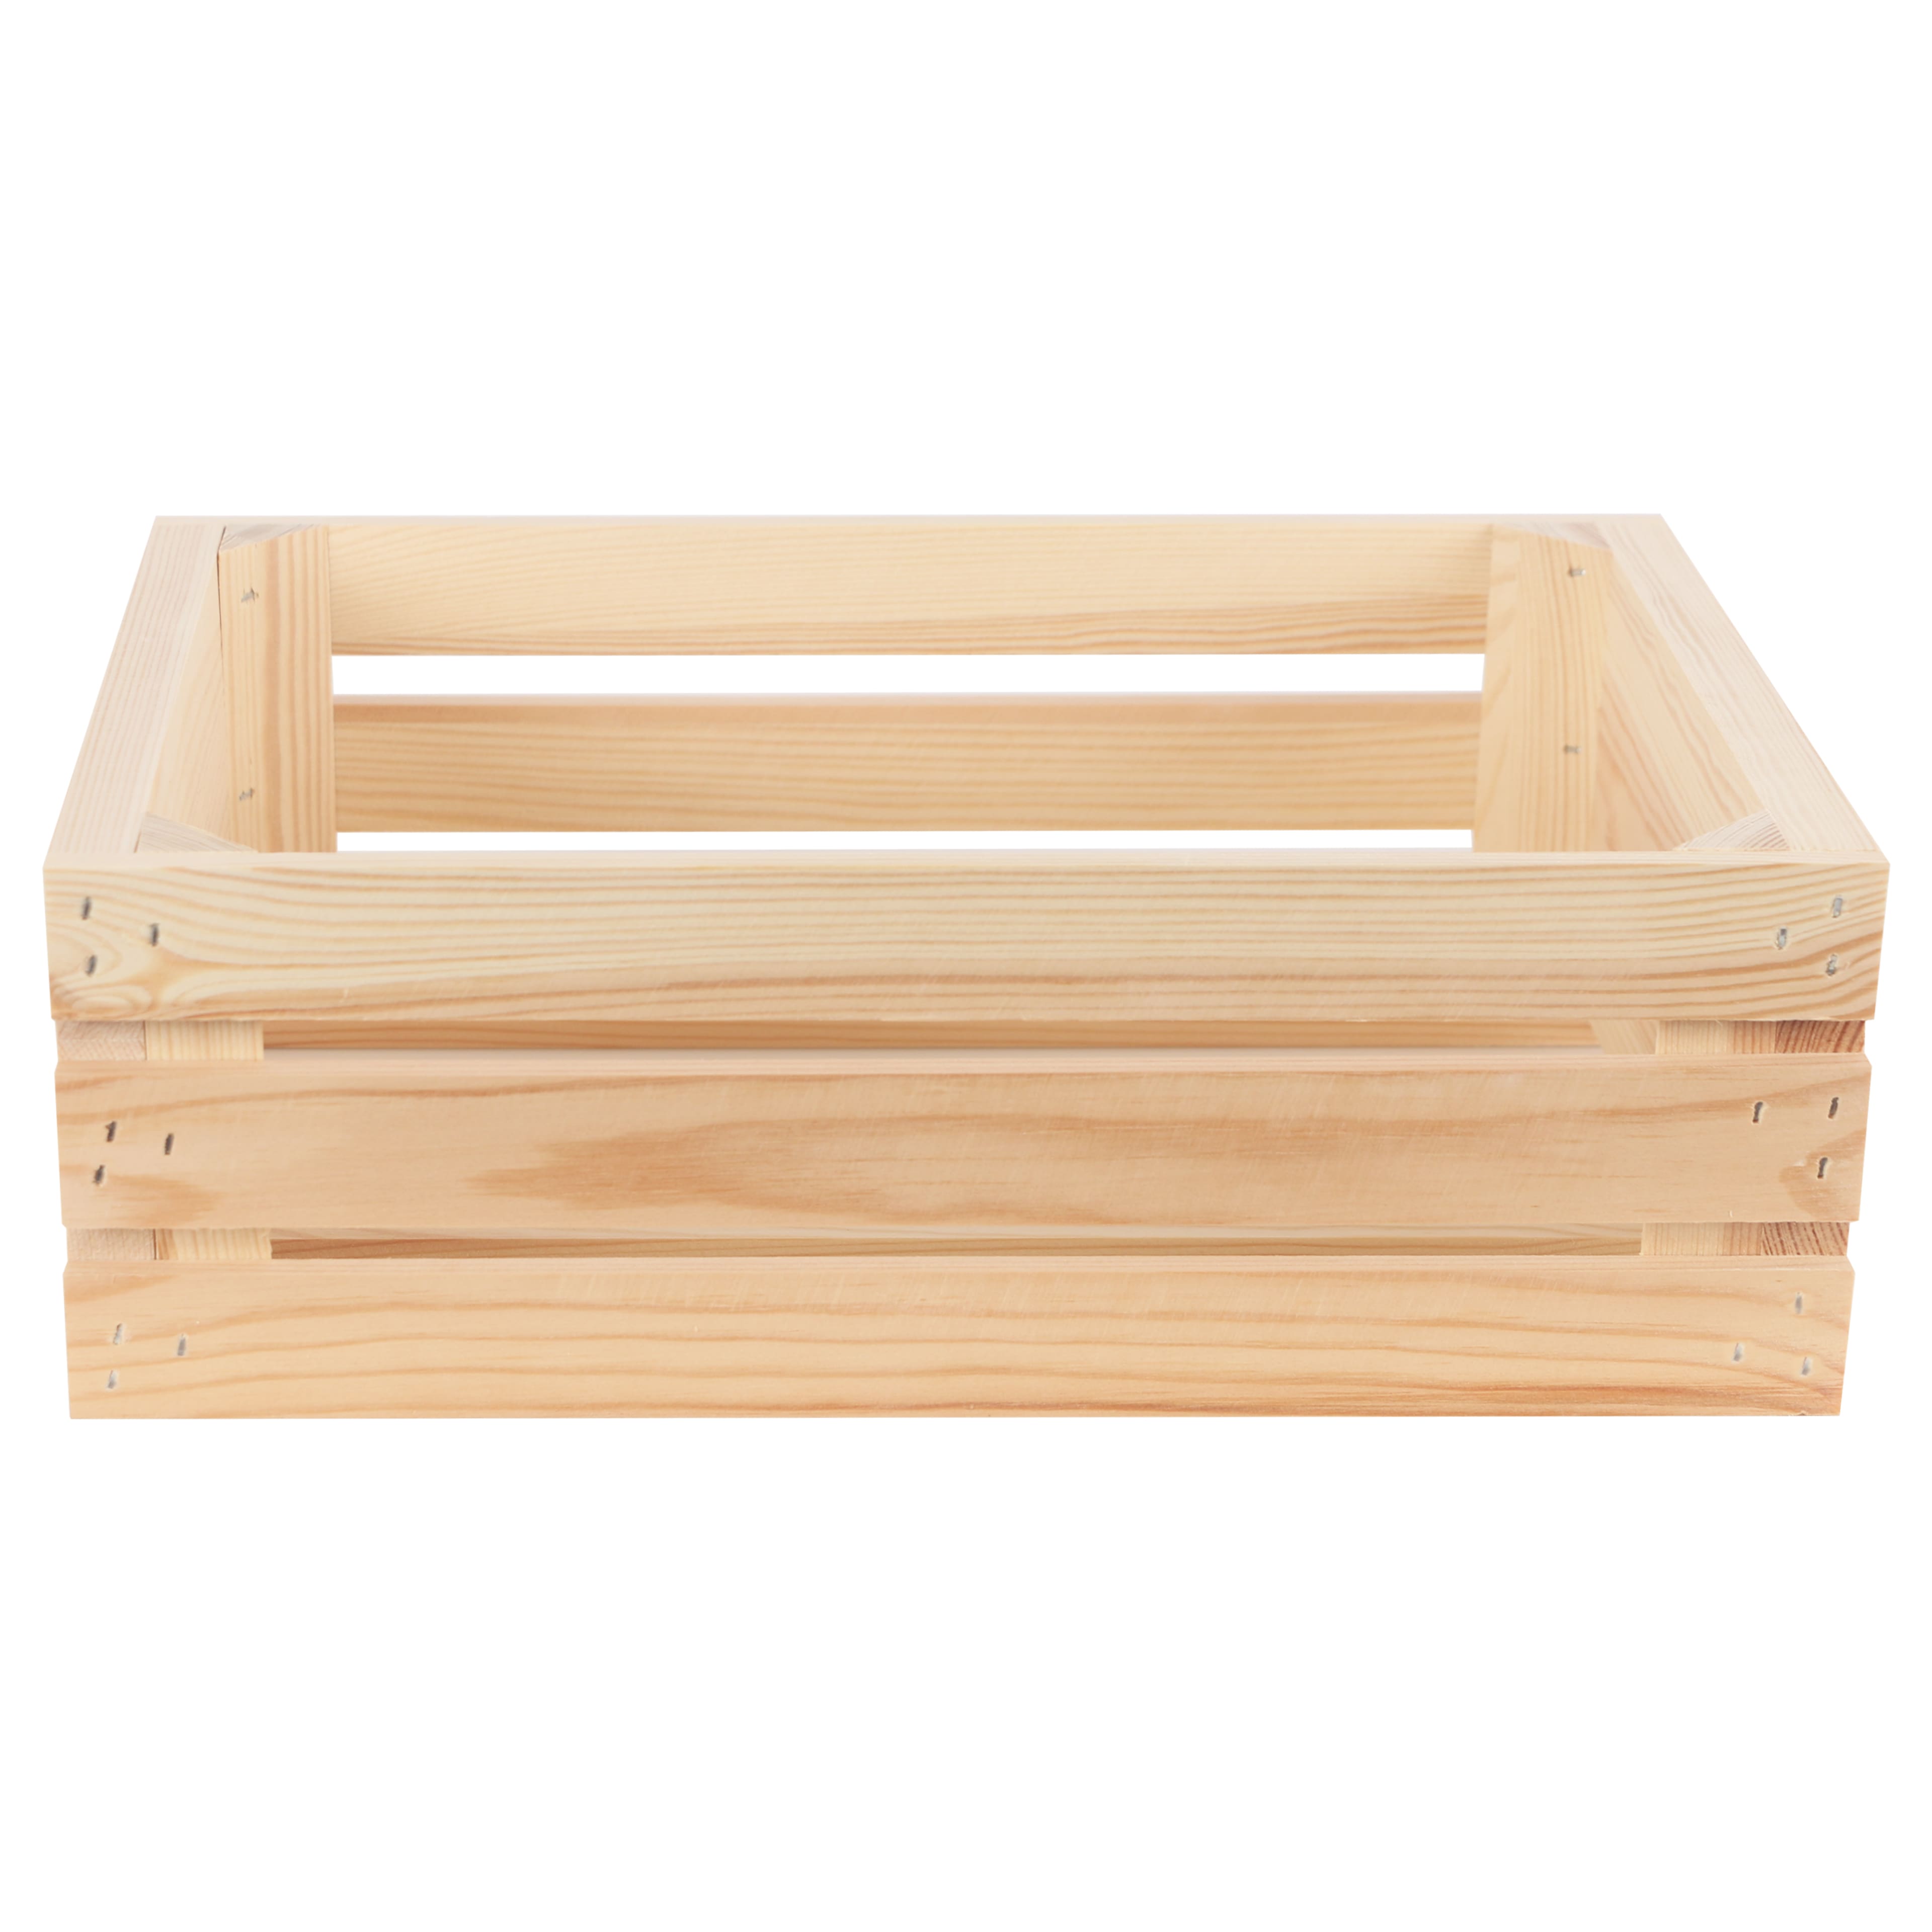 DIY Unfinished Wood Box Frames - Makes 12